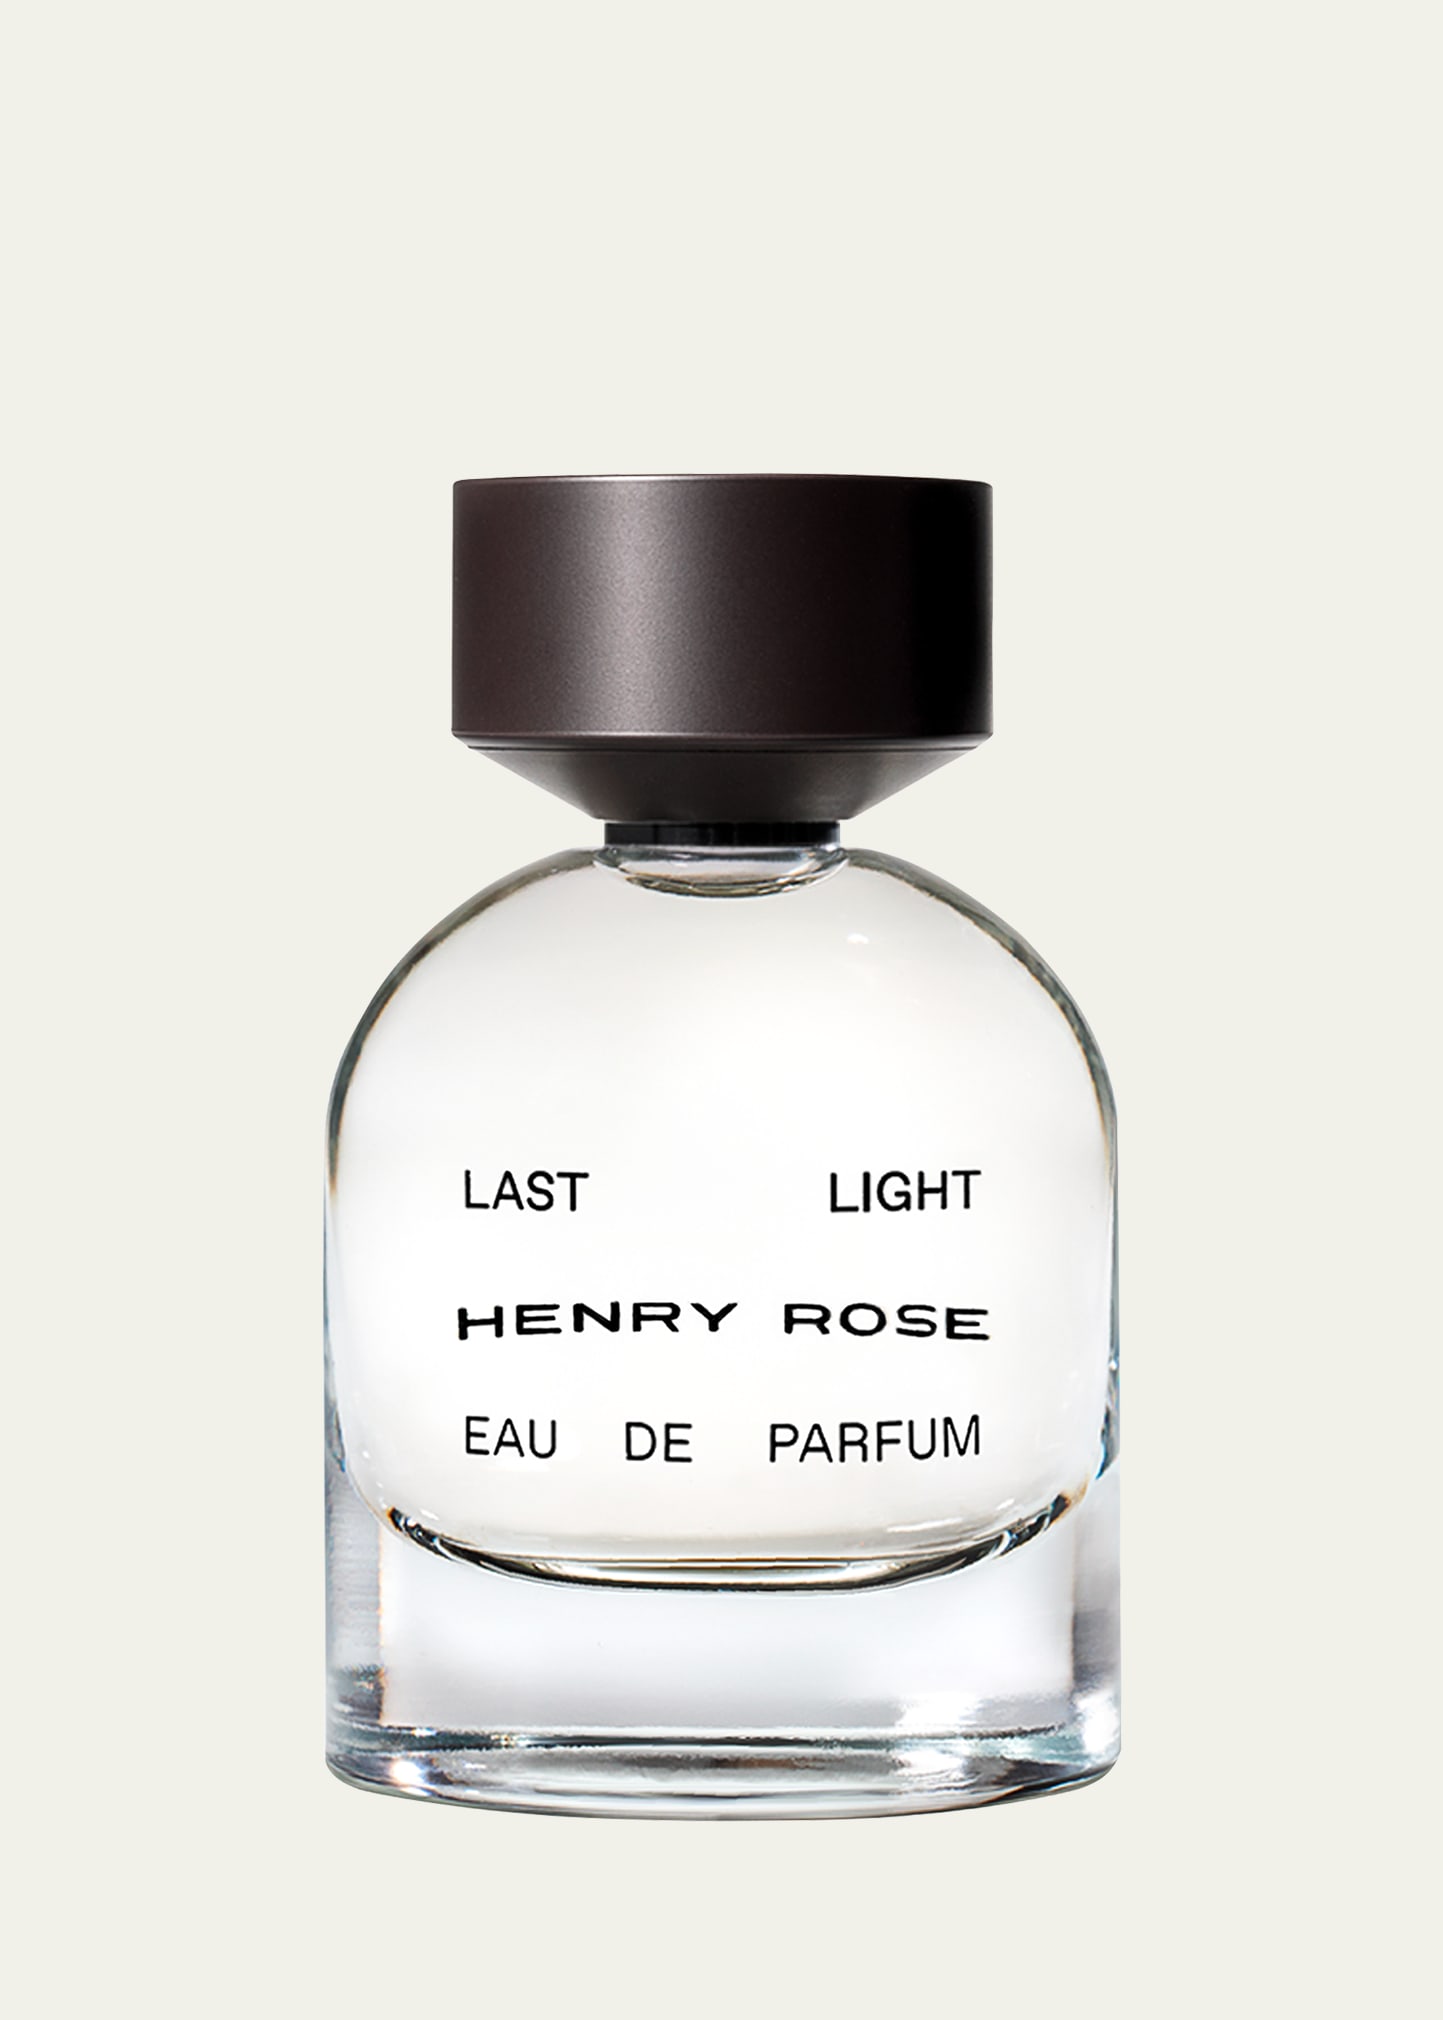 HENRY ROSE Last Light Eau de Parfum, 1.7 oz.